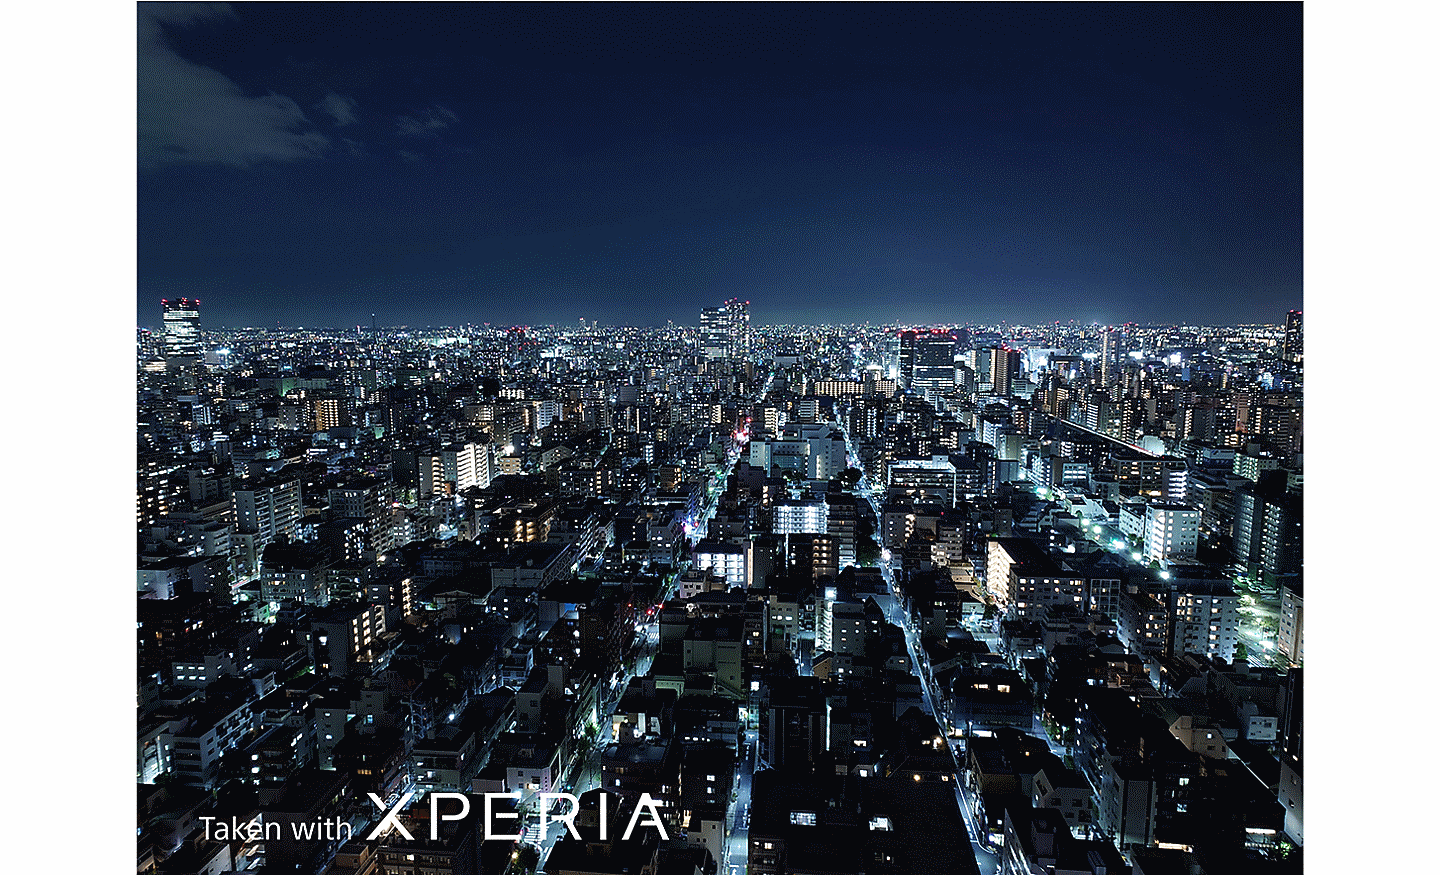 Large paysage urbain de nuit, vu d’en haut. Le texte indique : « Photo prise avec un XPERIA ».